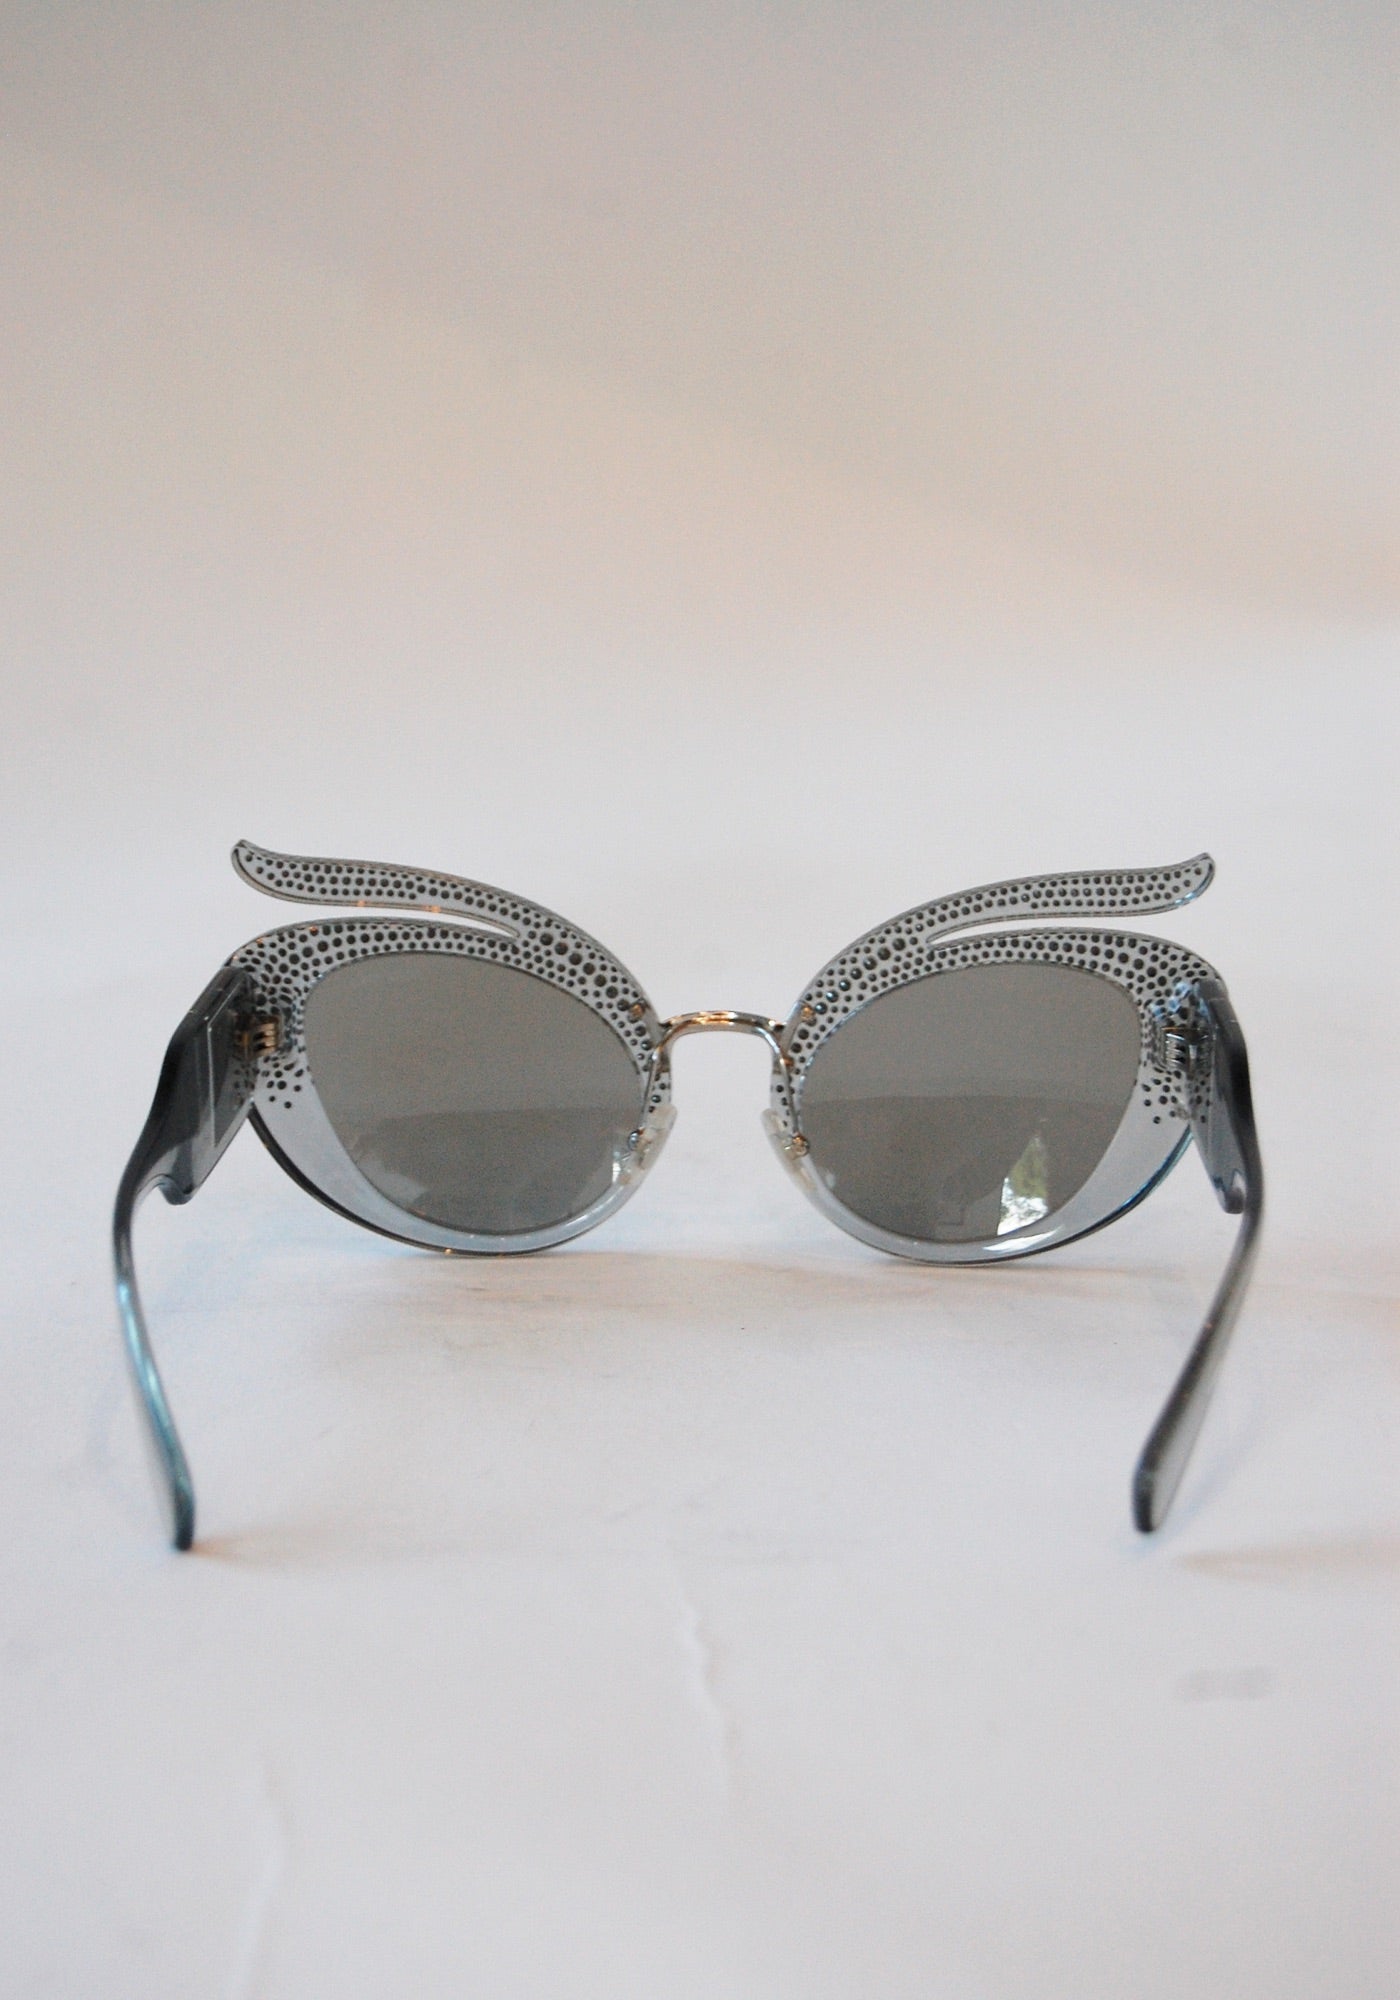 Miu Miu Silver Rhinestone Sunglasses